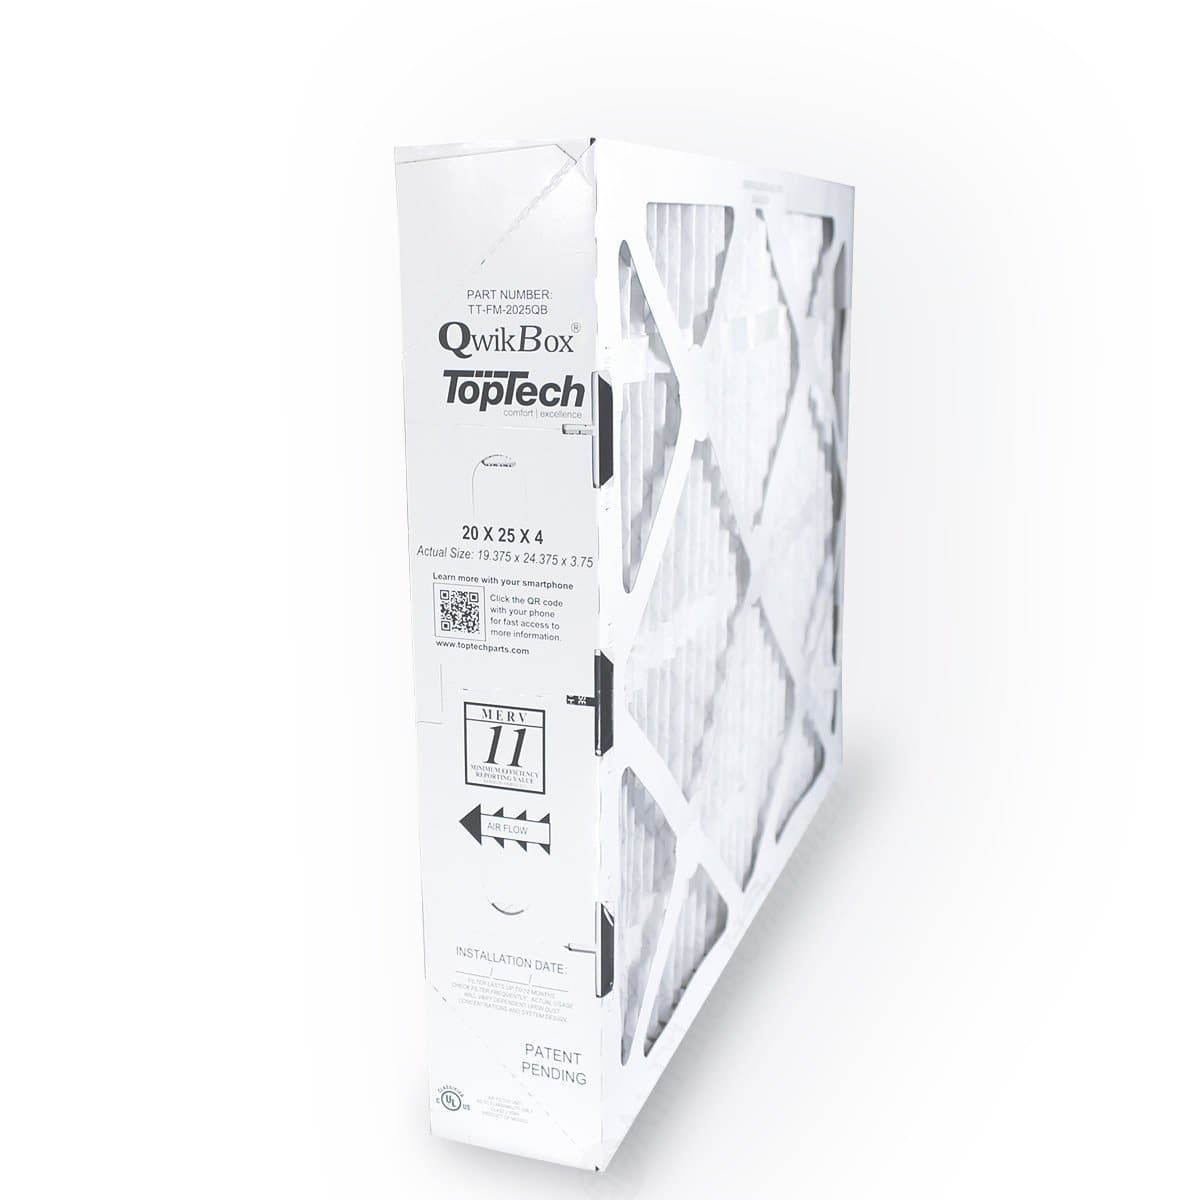 TopTech TechPure TT-FM-2025 QB OEM 20x25x4 Replacement Furnace Filter - QwikBox(R)